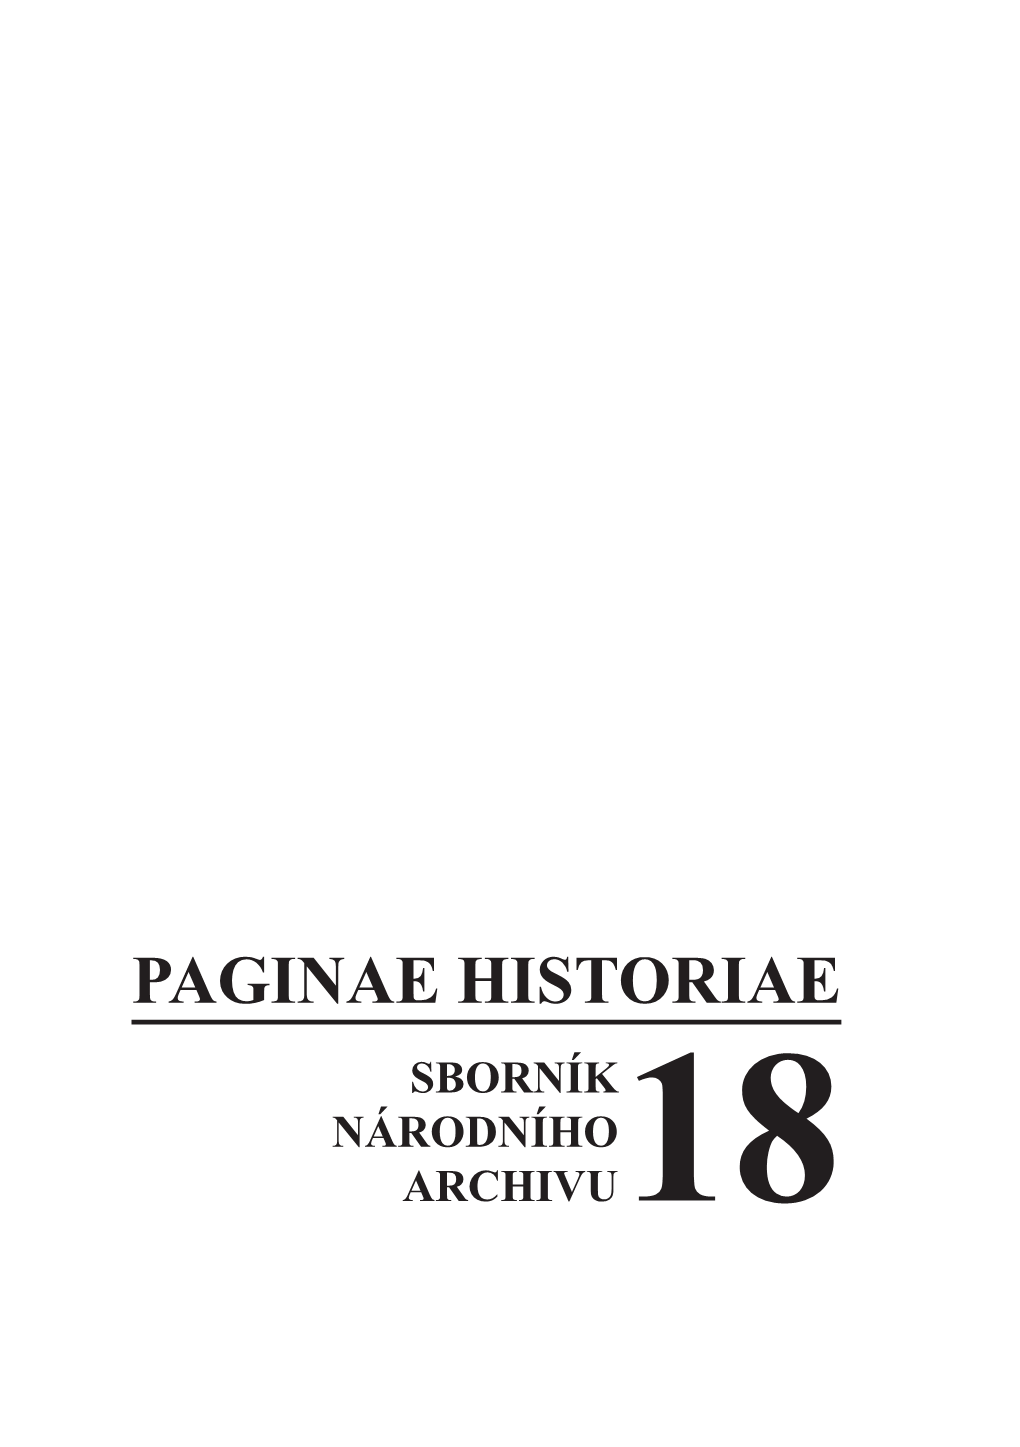 PAGINAE HISTORIAE SBORNÍK NÁRODNÍHO ARCHIVU18 © Národní Archiv 2010 ISBN 978-80-86712-83-3 ISSN 1211-9768 Obsah Studie